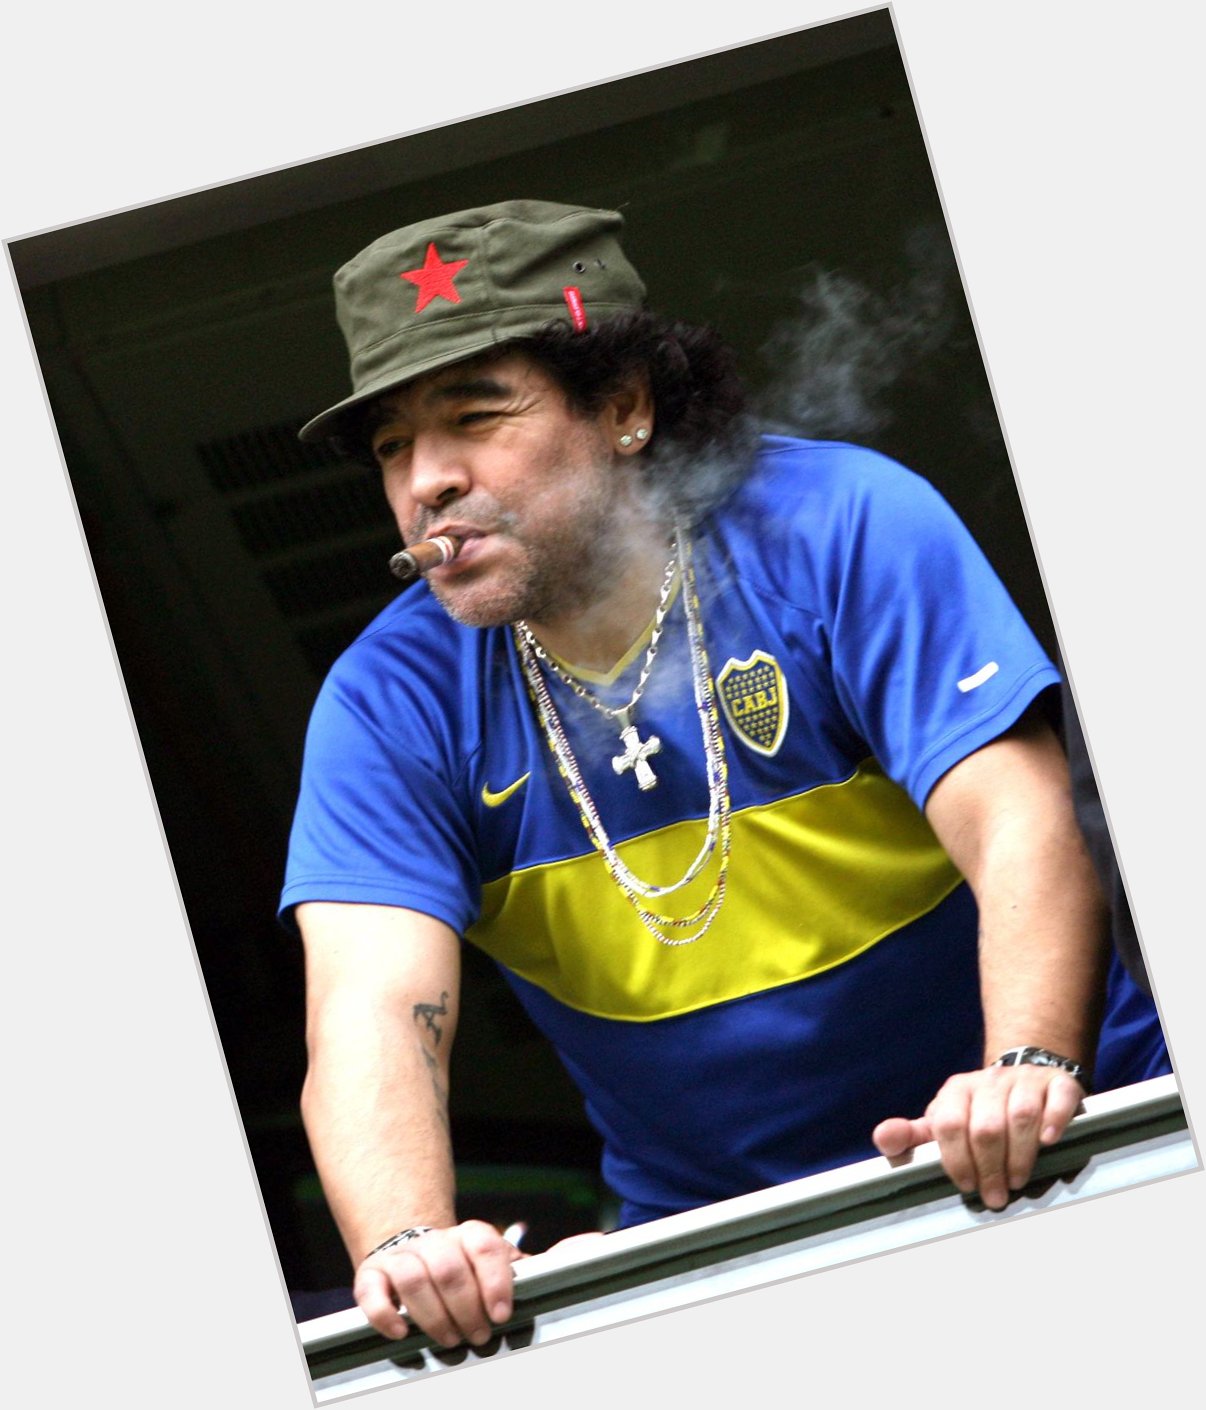 Happy birthday to a true legend, Diego Armando Maradona. 55 today. 